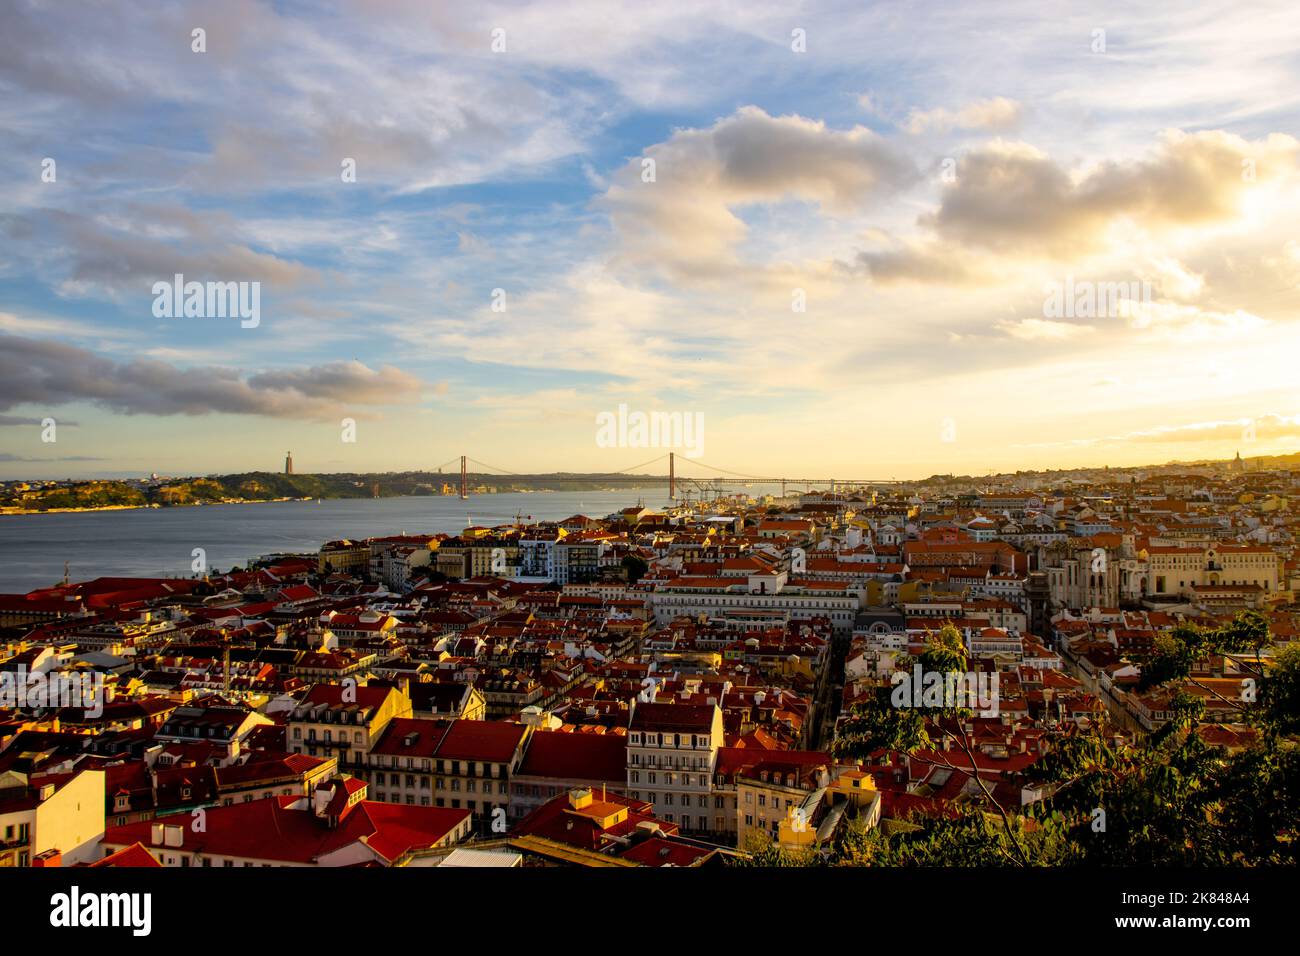 Paysage de la vieille ville de Lisbonne au coucher du soleil. Heure d'or à Lisbonne avec vue sur les toits rouges, le ciel bleu et le pont de 25 avril à une distance Banque D'Images